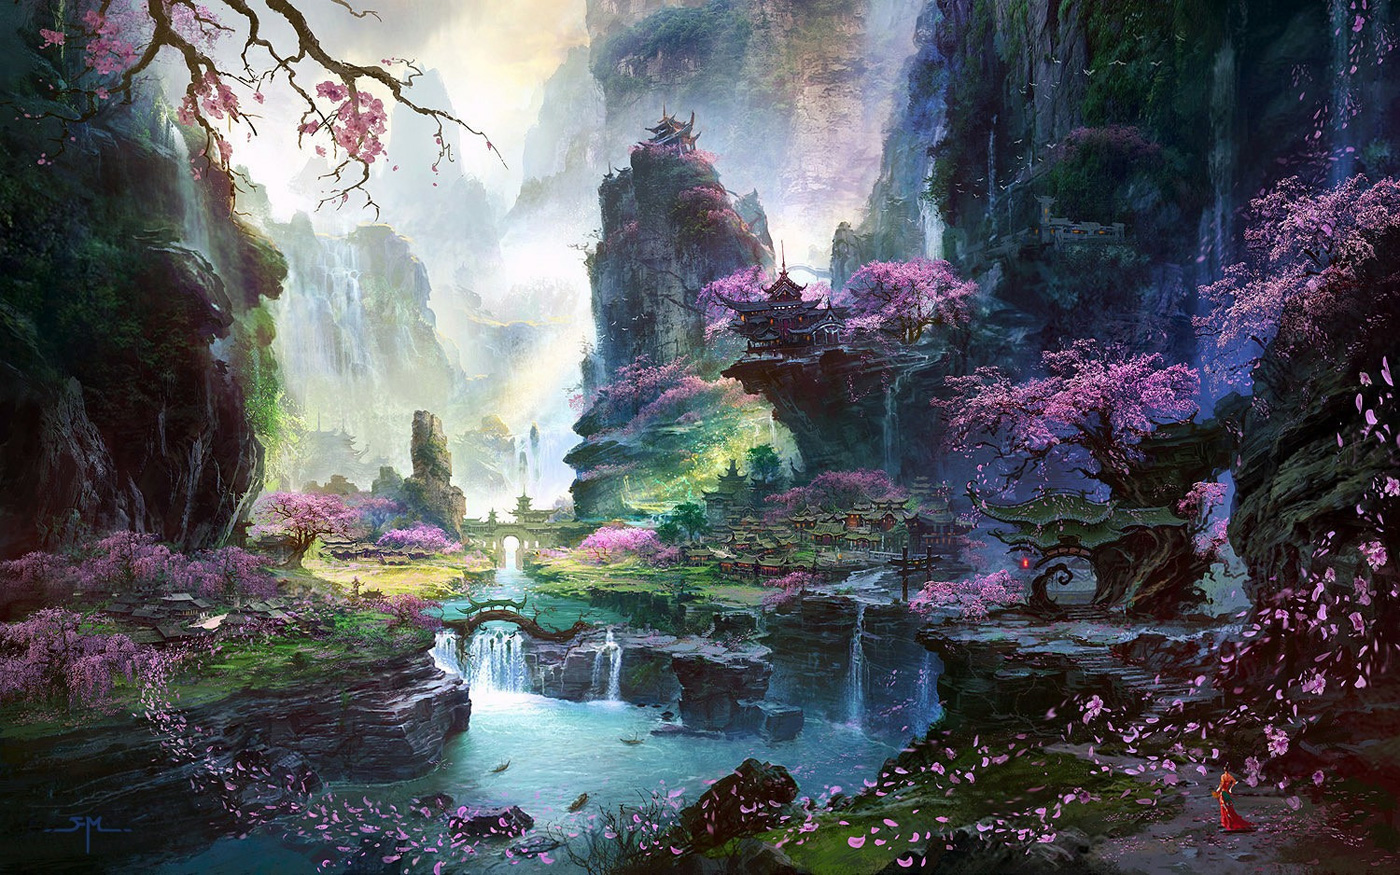 Les environnements spectaculaires en digital painting de Fan Ming